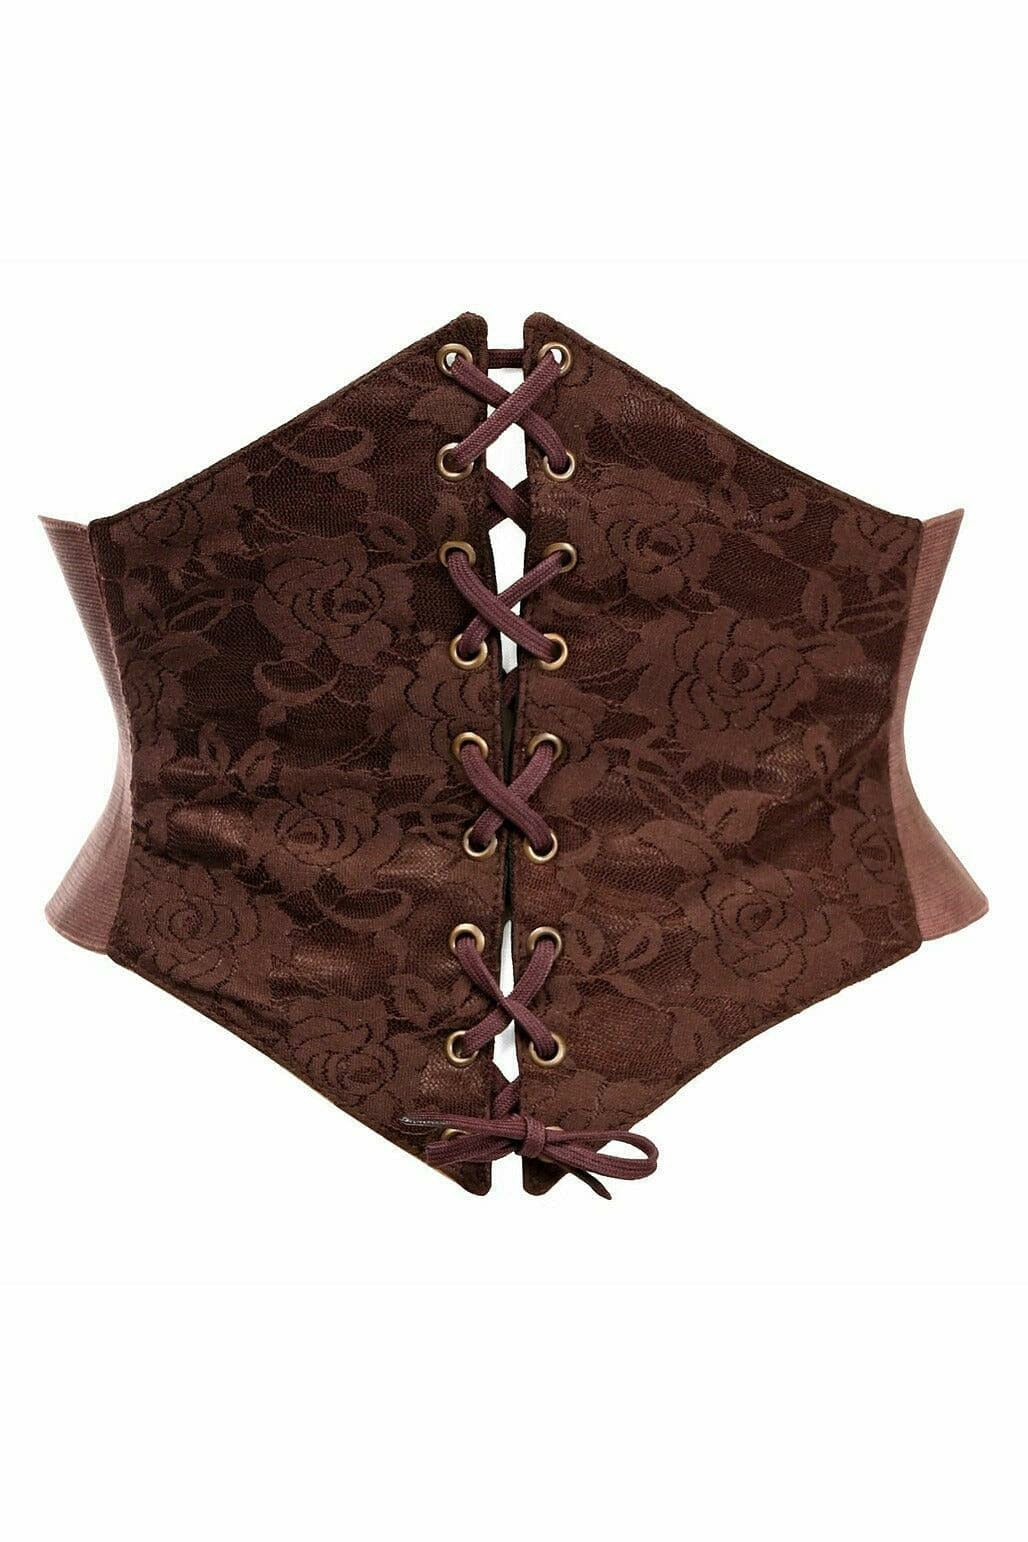 Lavish Dark Brown Lace Corset Belt Cincher-Corset Belts-Daisy Corsets-Brown-S-SEXYSHOES.COM